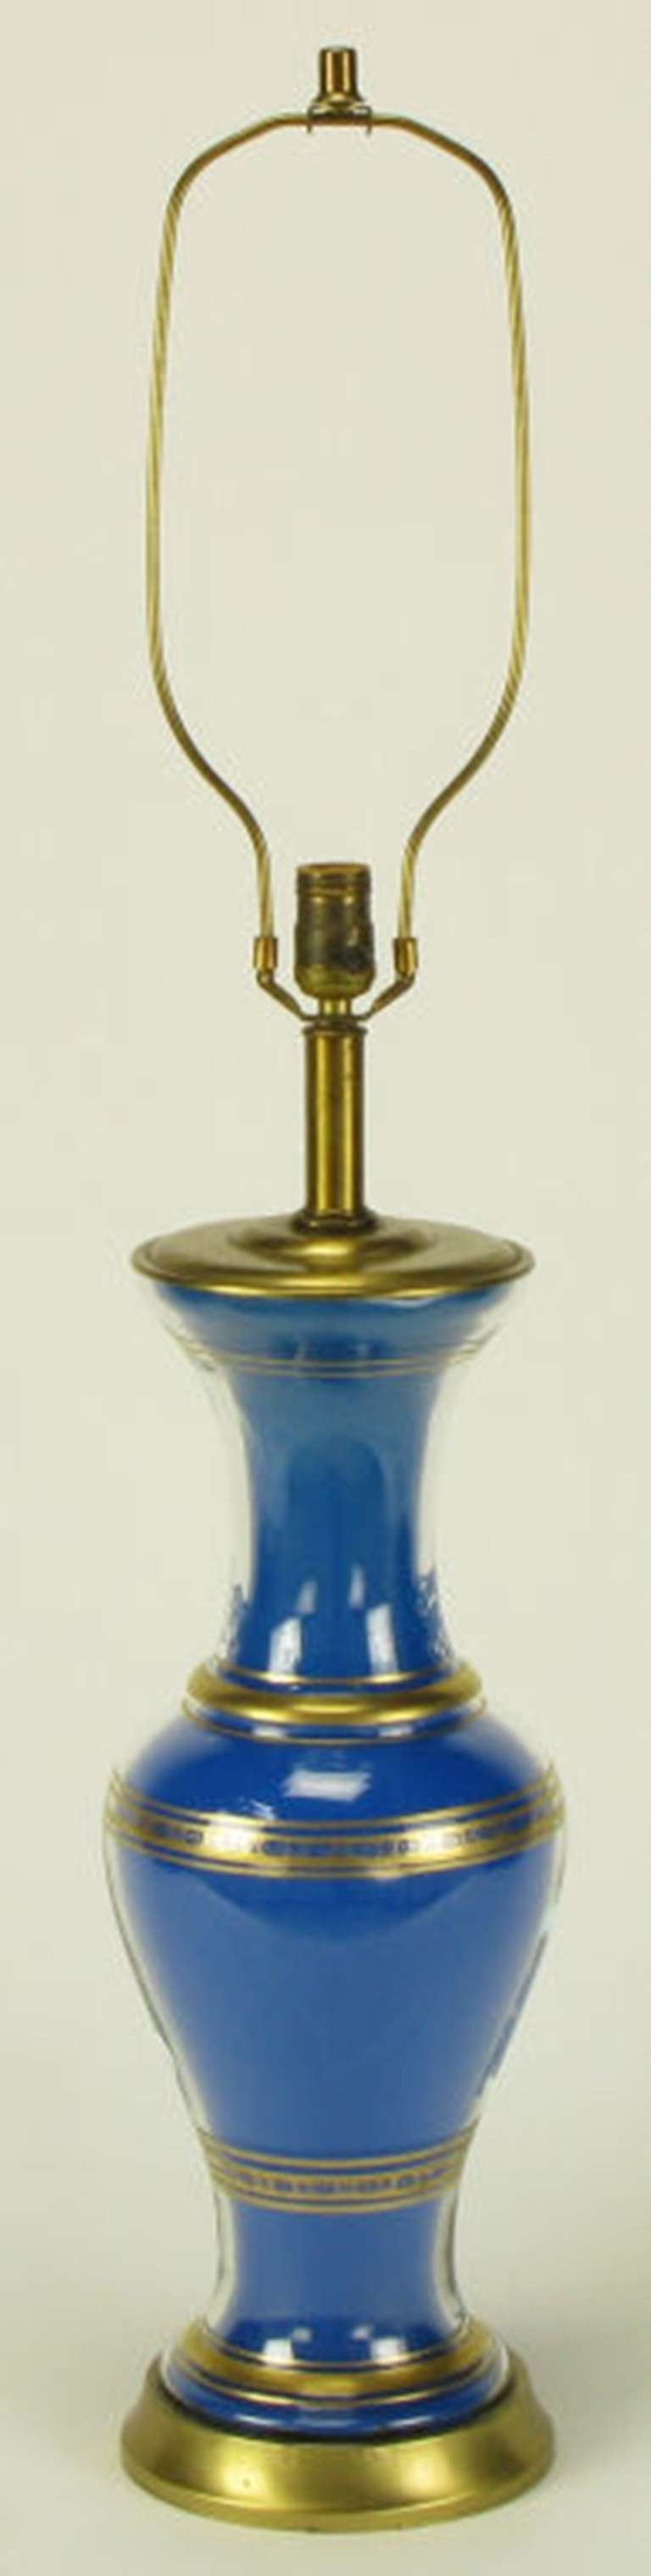 Zwei vasenförmige Glastischlampen von Frederick Cooper mit königsblauen Einsätzen auf der Rückseite. Vergoldete Details mit Sockel, Kappe und Stiel aus gebürstetem Messing. Fassung und Harfe aus Messing, signiert und neu verkabelt.